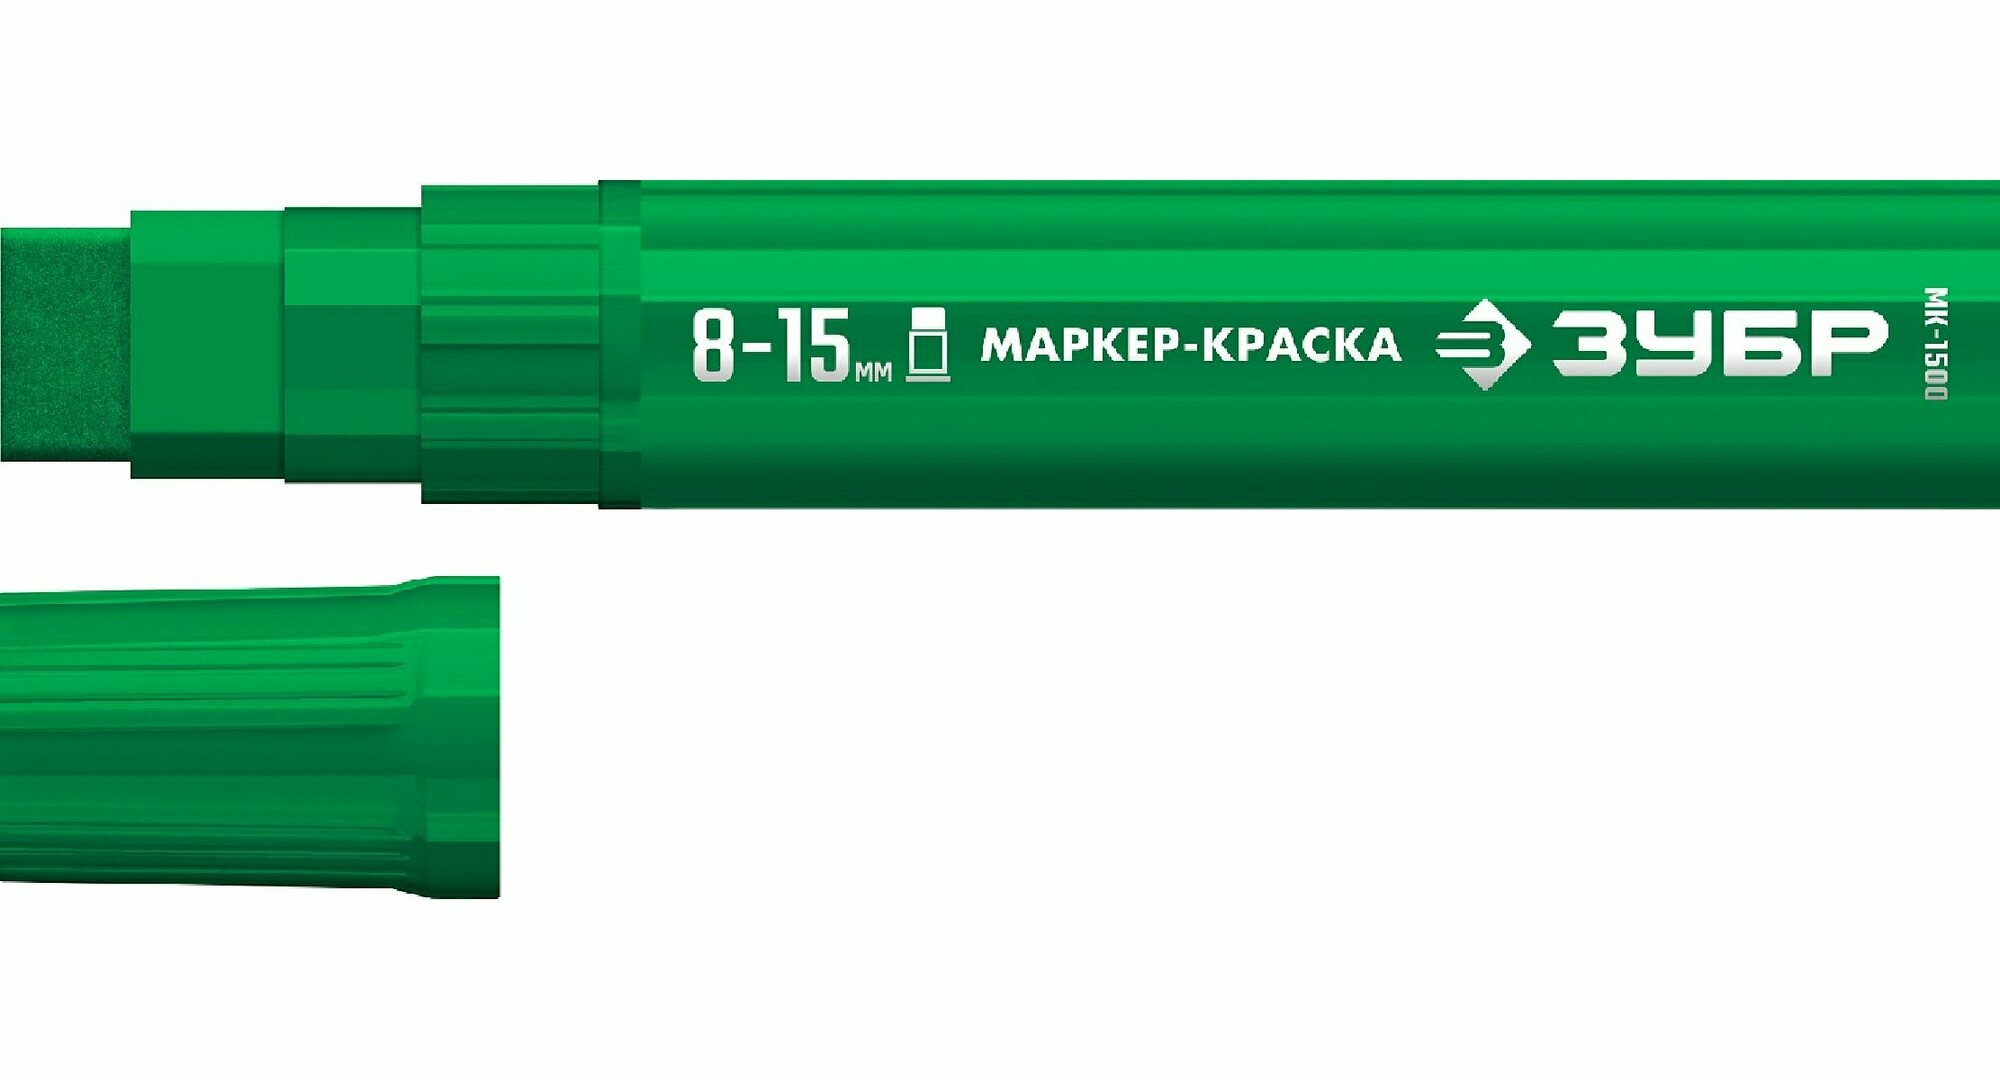 ЗУБР МК-1500 8-15 мм, плоский, зеленый, экстрабольшой объем, Маркер-краска, профессионал (06329-4) (06329-4)